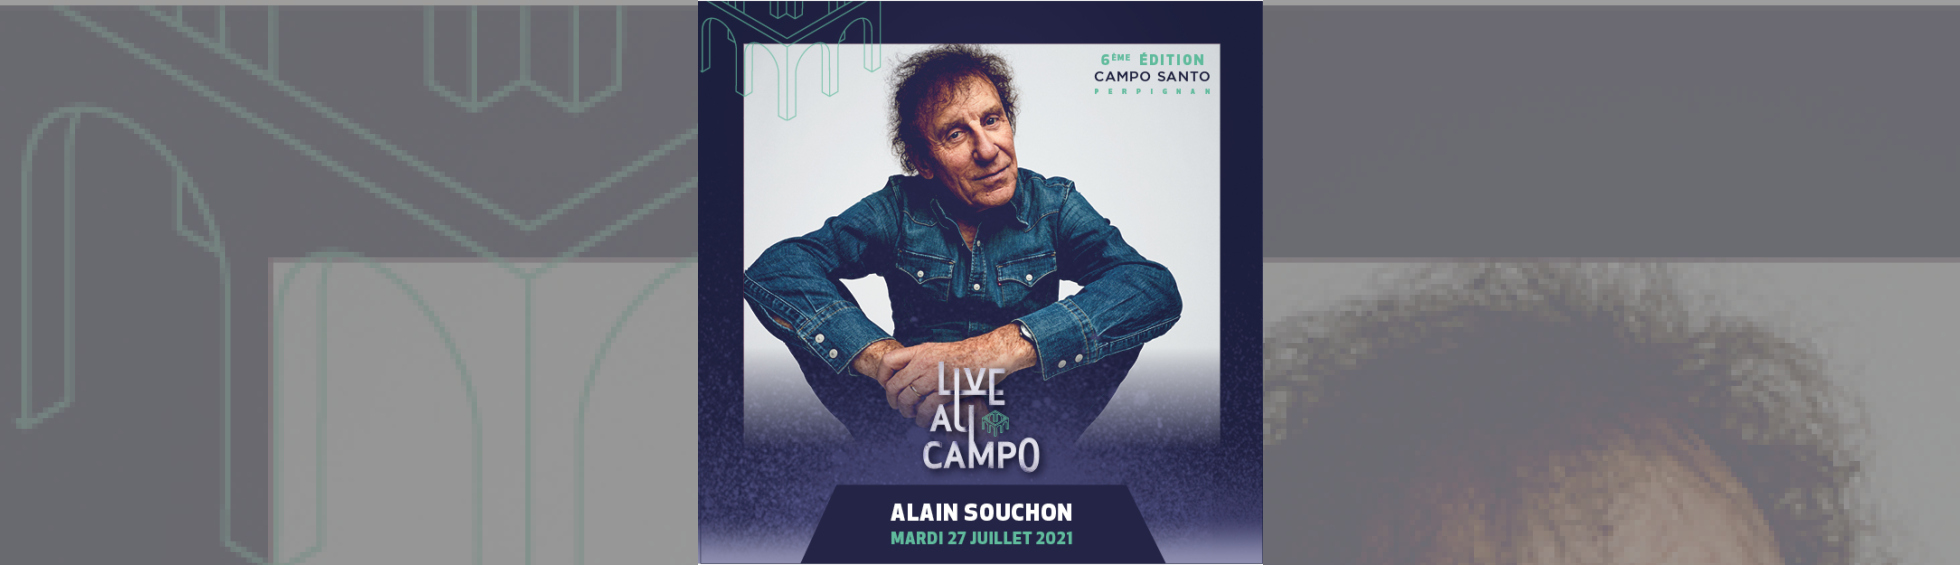 affiche concert Alain Souchon - photo couleur Alain Souchon assis en tailleur